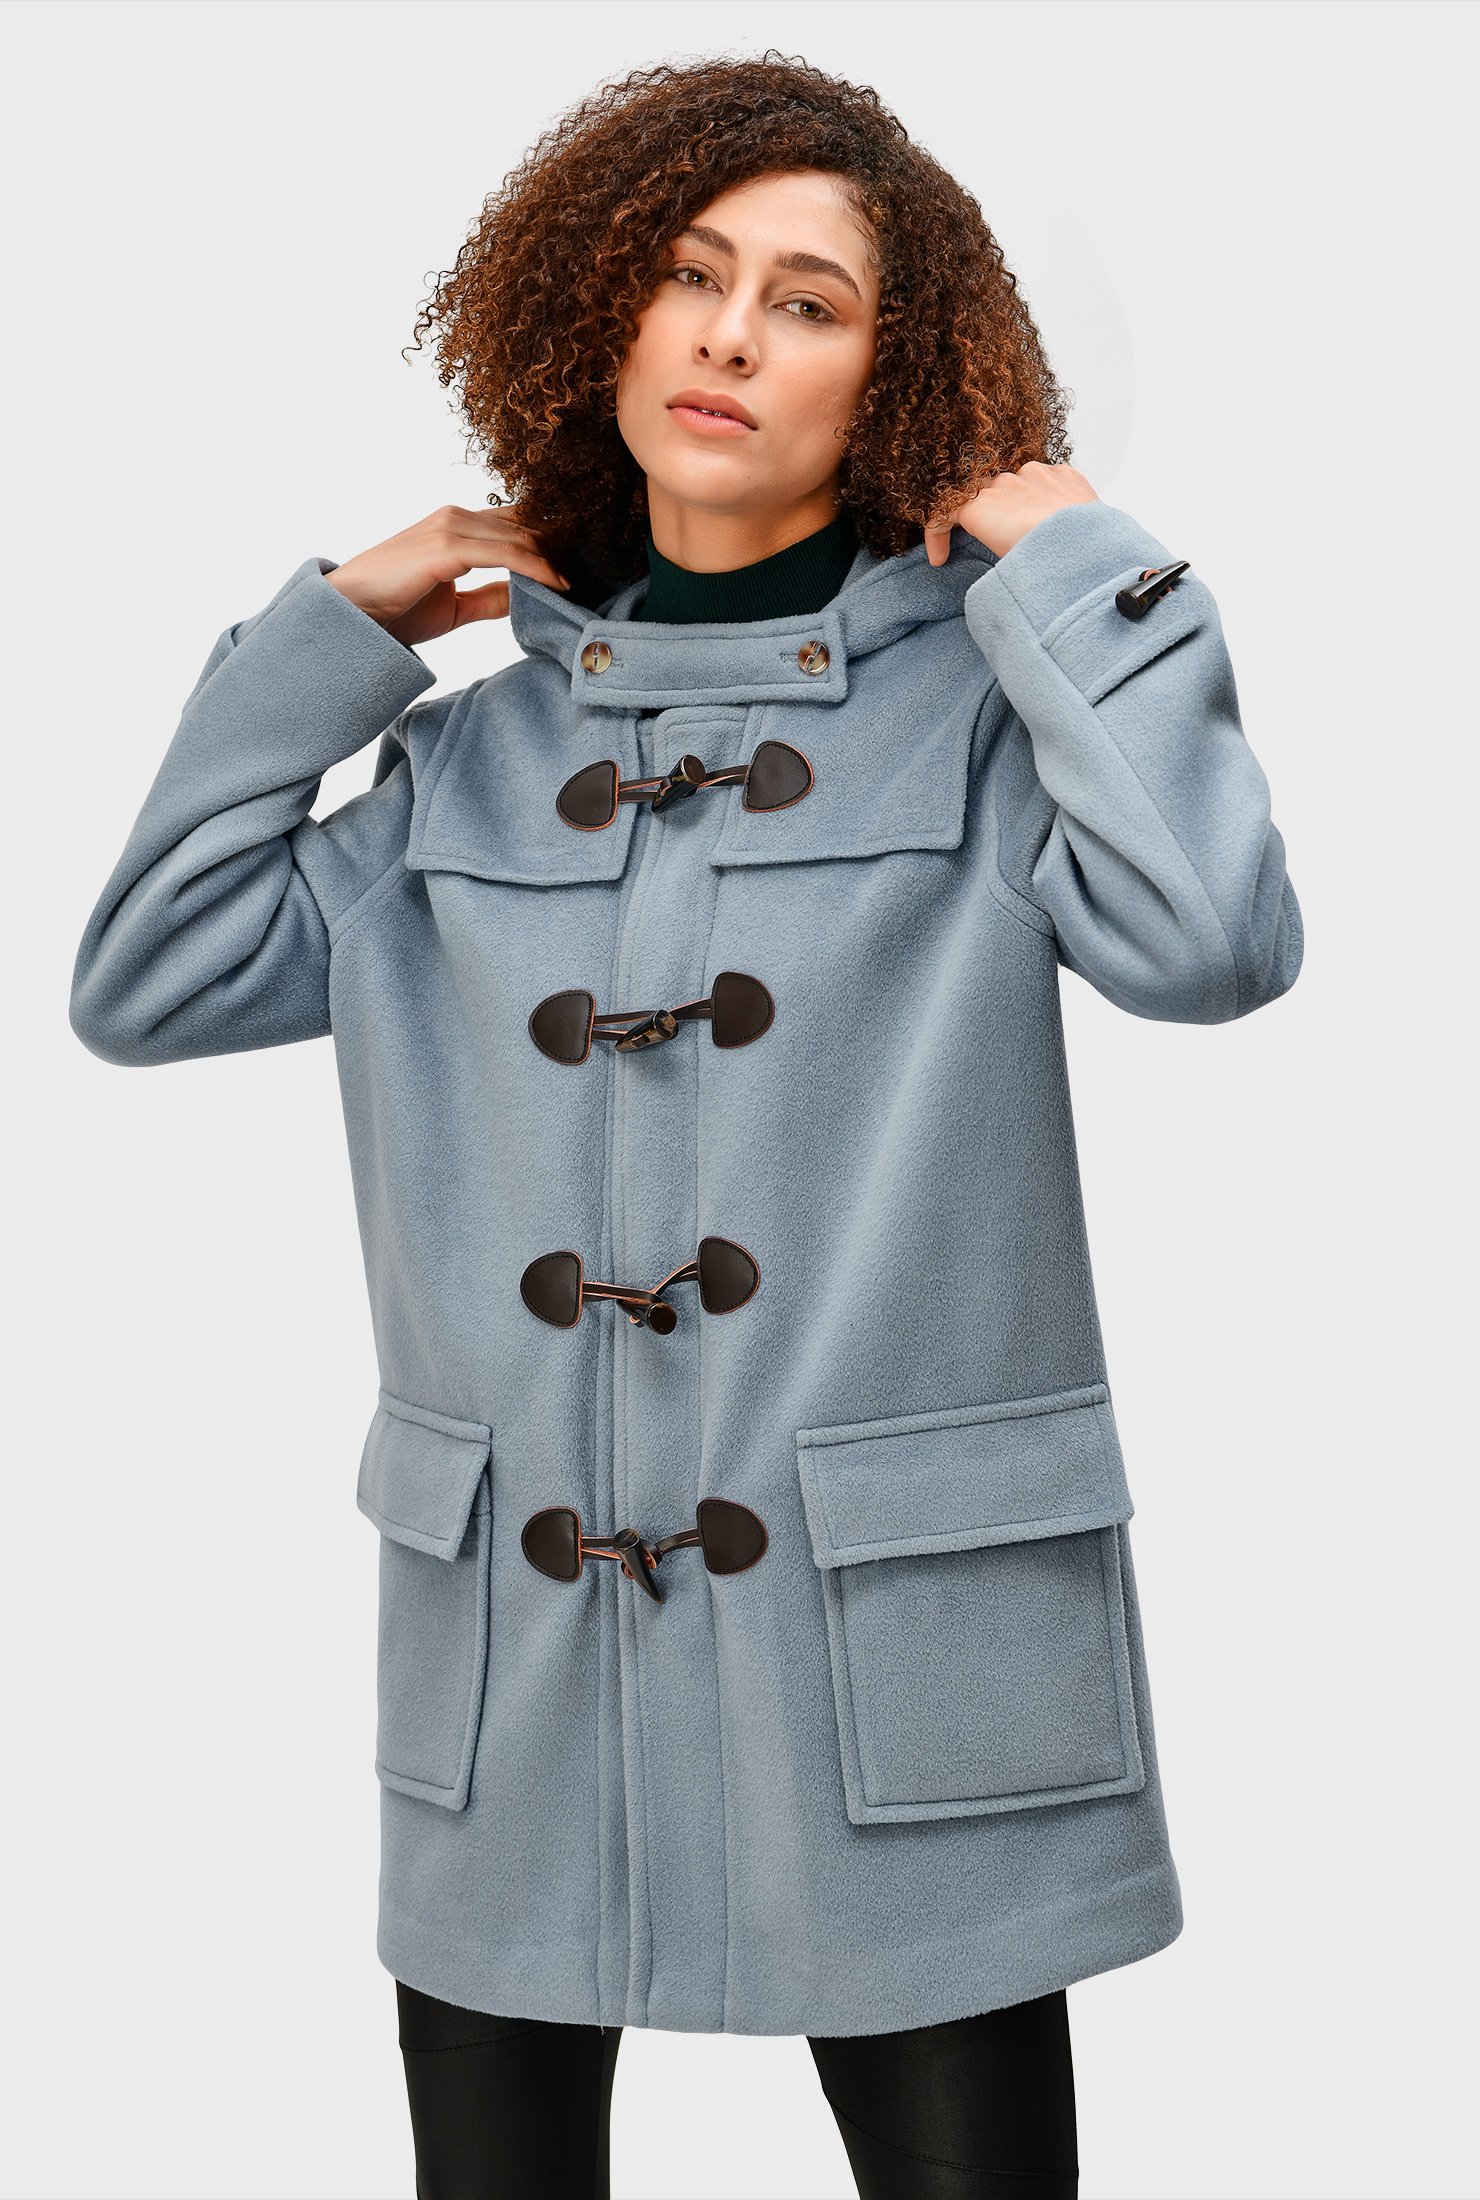 Teal Ladies Faux Fur Trim Hooded Duffle Coat